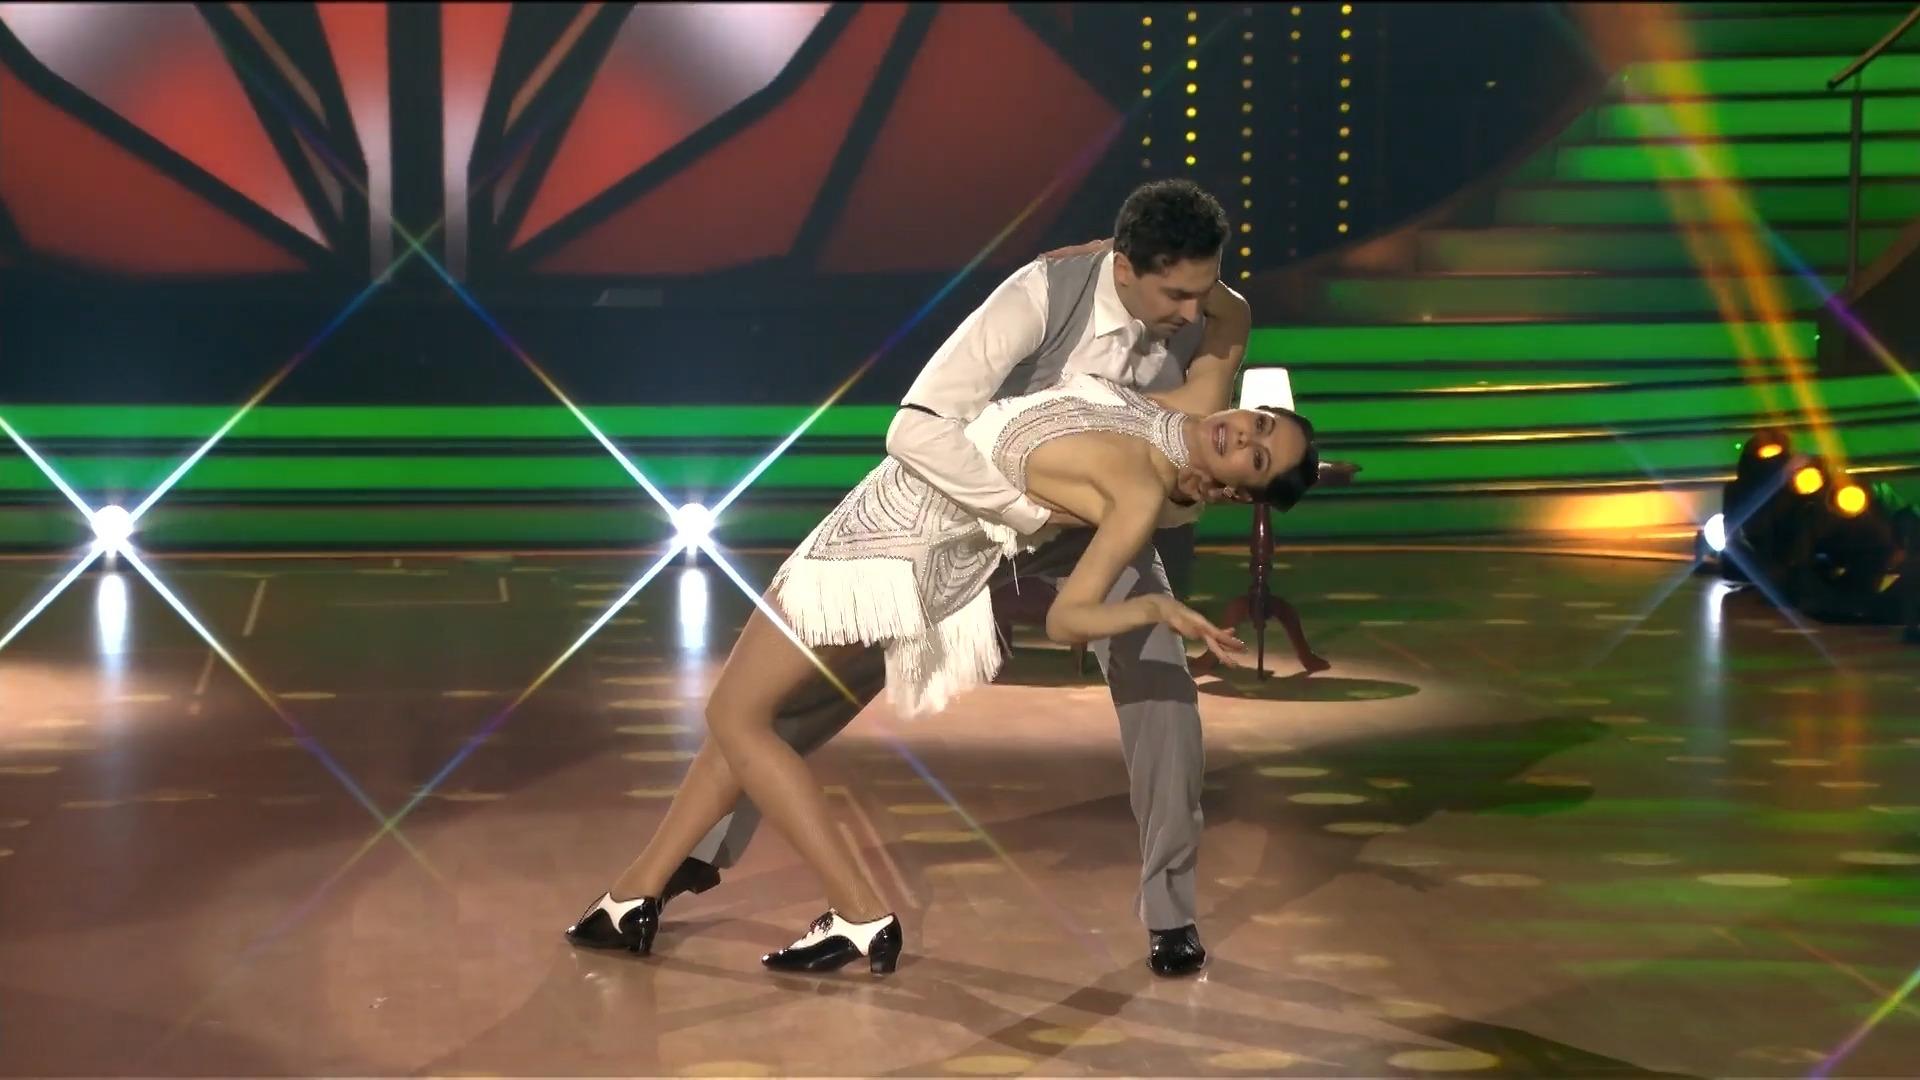 Natalia Yegorova tanzt grazil wie die Piaf persönlich Ein Hauch von Eleganz bei "Let's Dance"